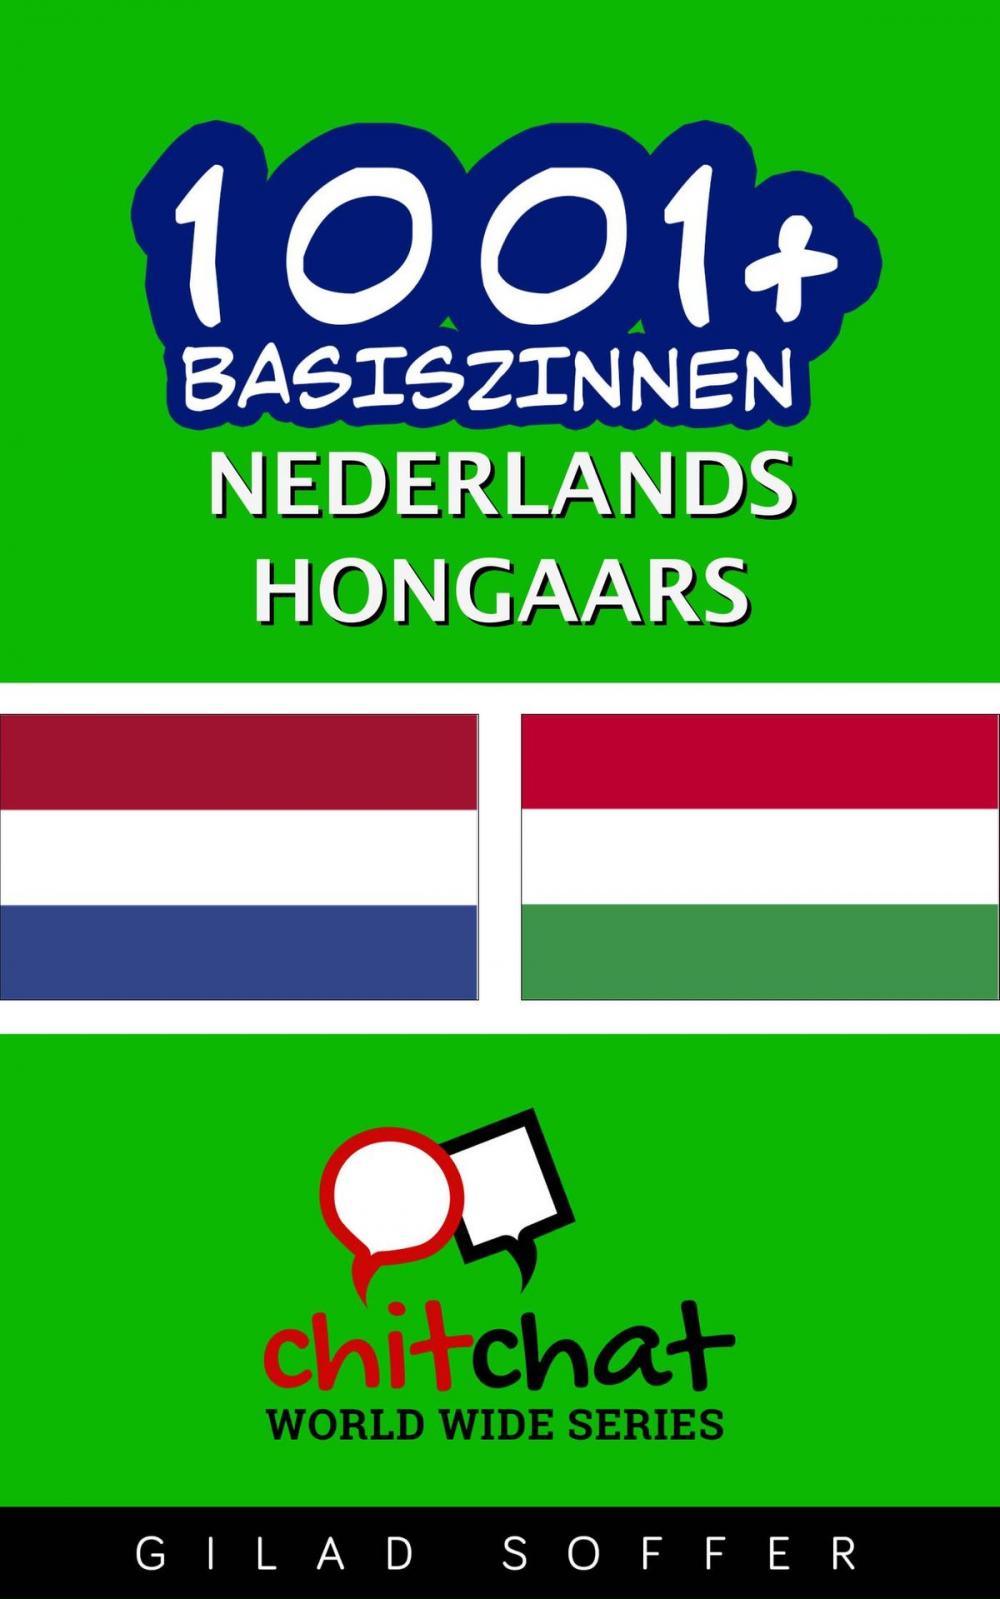 Big bigCover of 1001+ basiszinnen nederlands - Hongaars